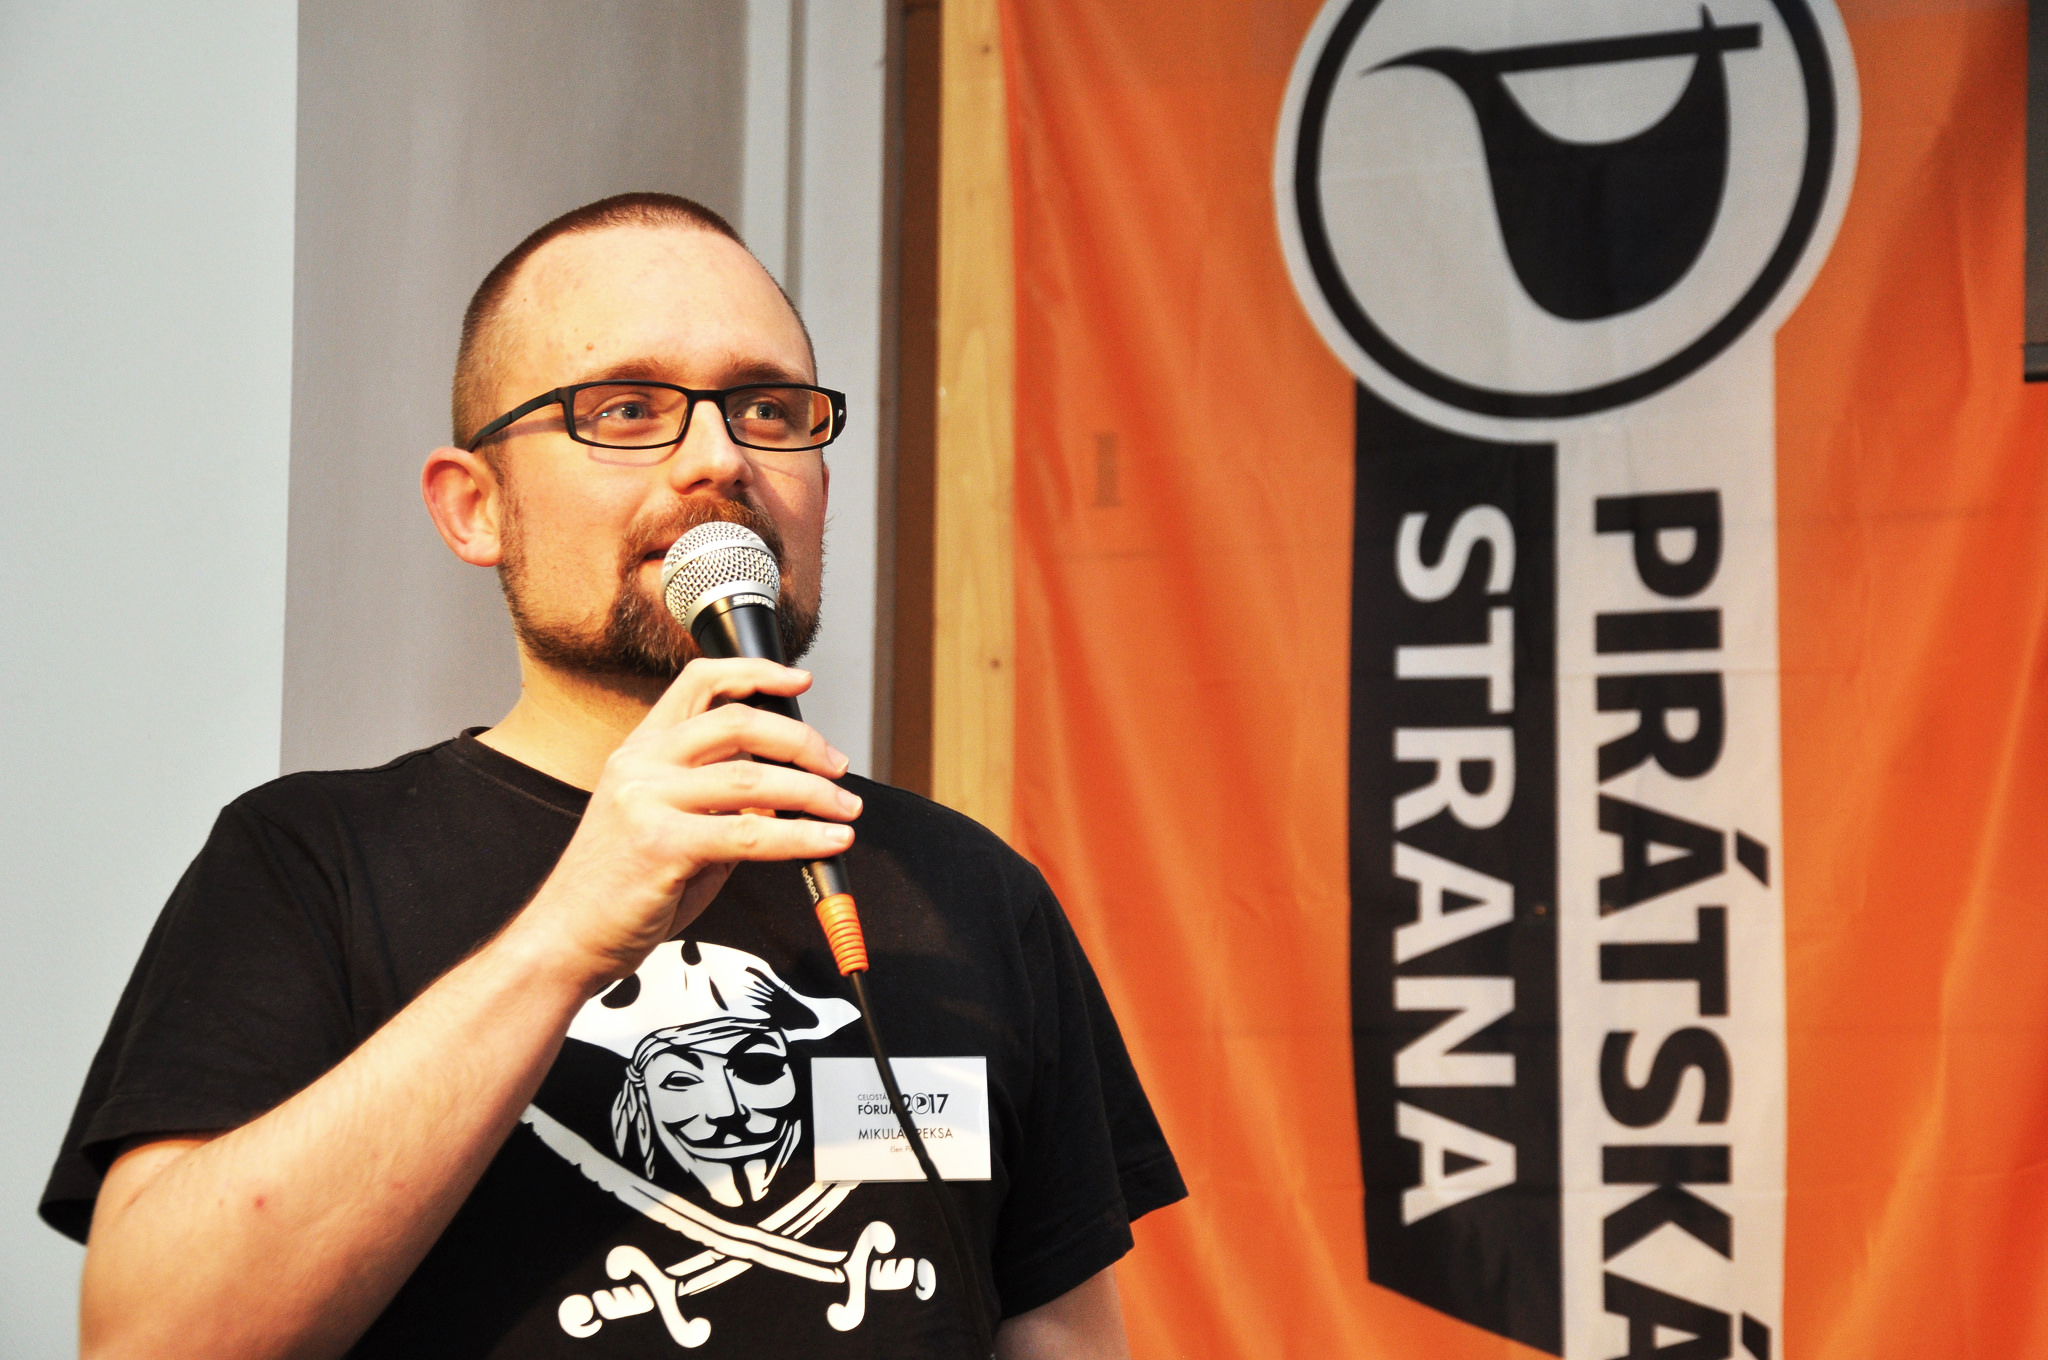 Piráti si zvolili za místopředsedu programátora a biofyzika Mikuláše Peksu